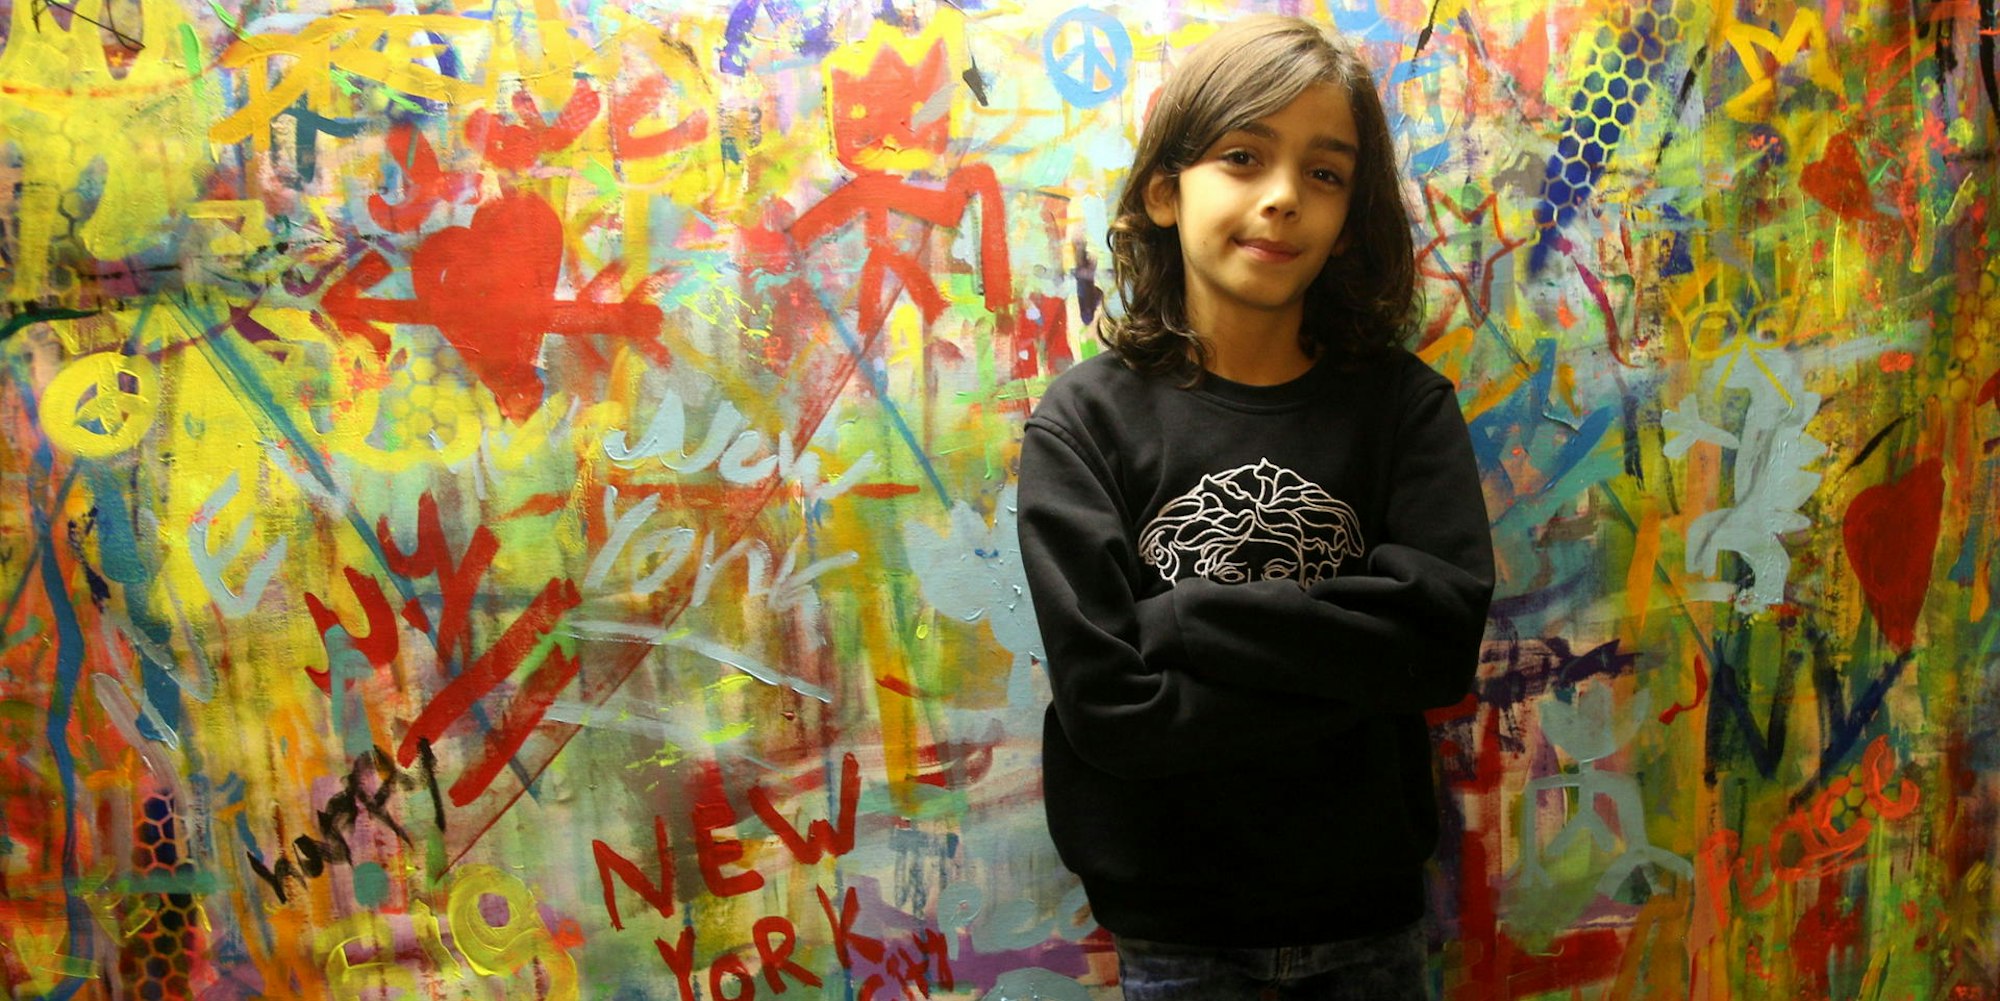 Mikail Akar aus Pulheim ist erst neun Jahre alt. Schon jetzt werden seine Bilder in der ganzen Welt ausgestellt.